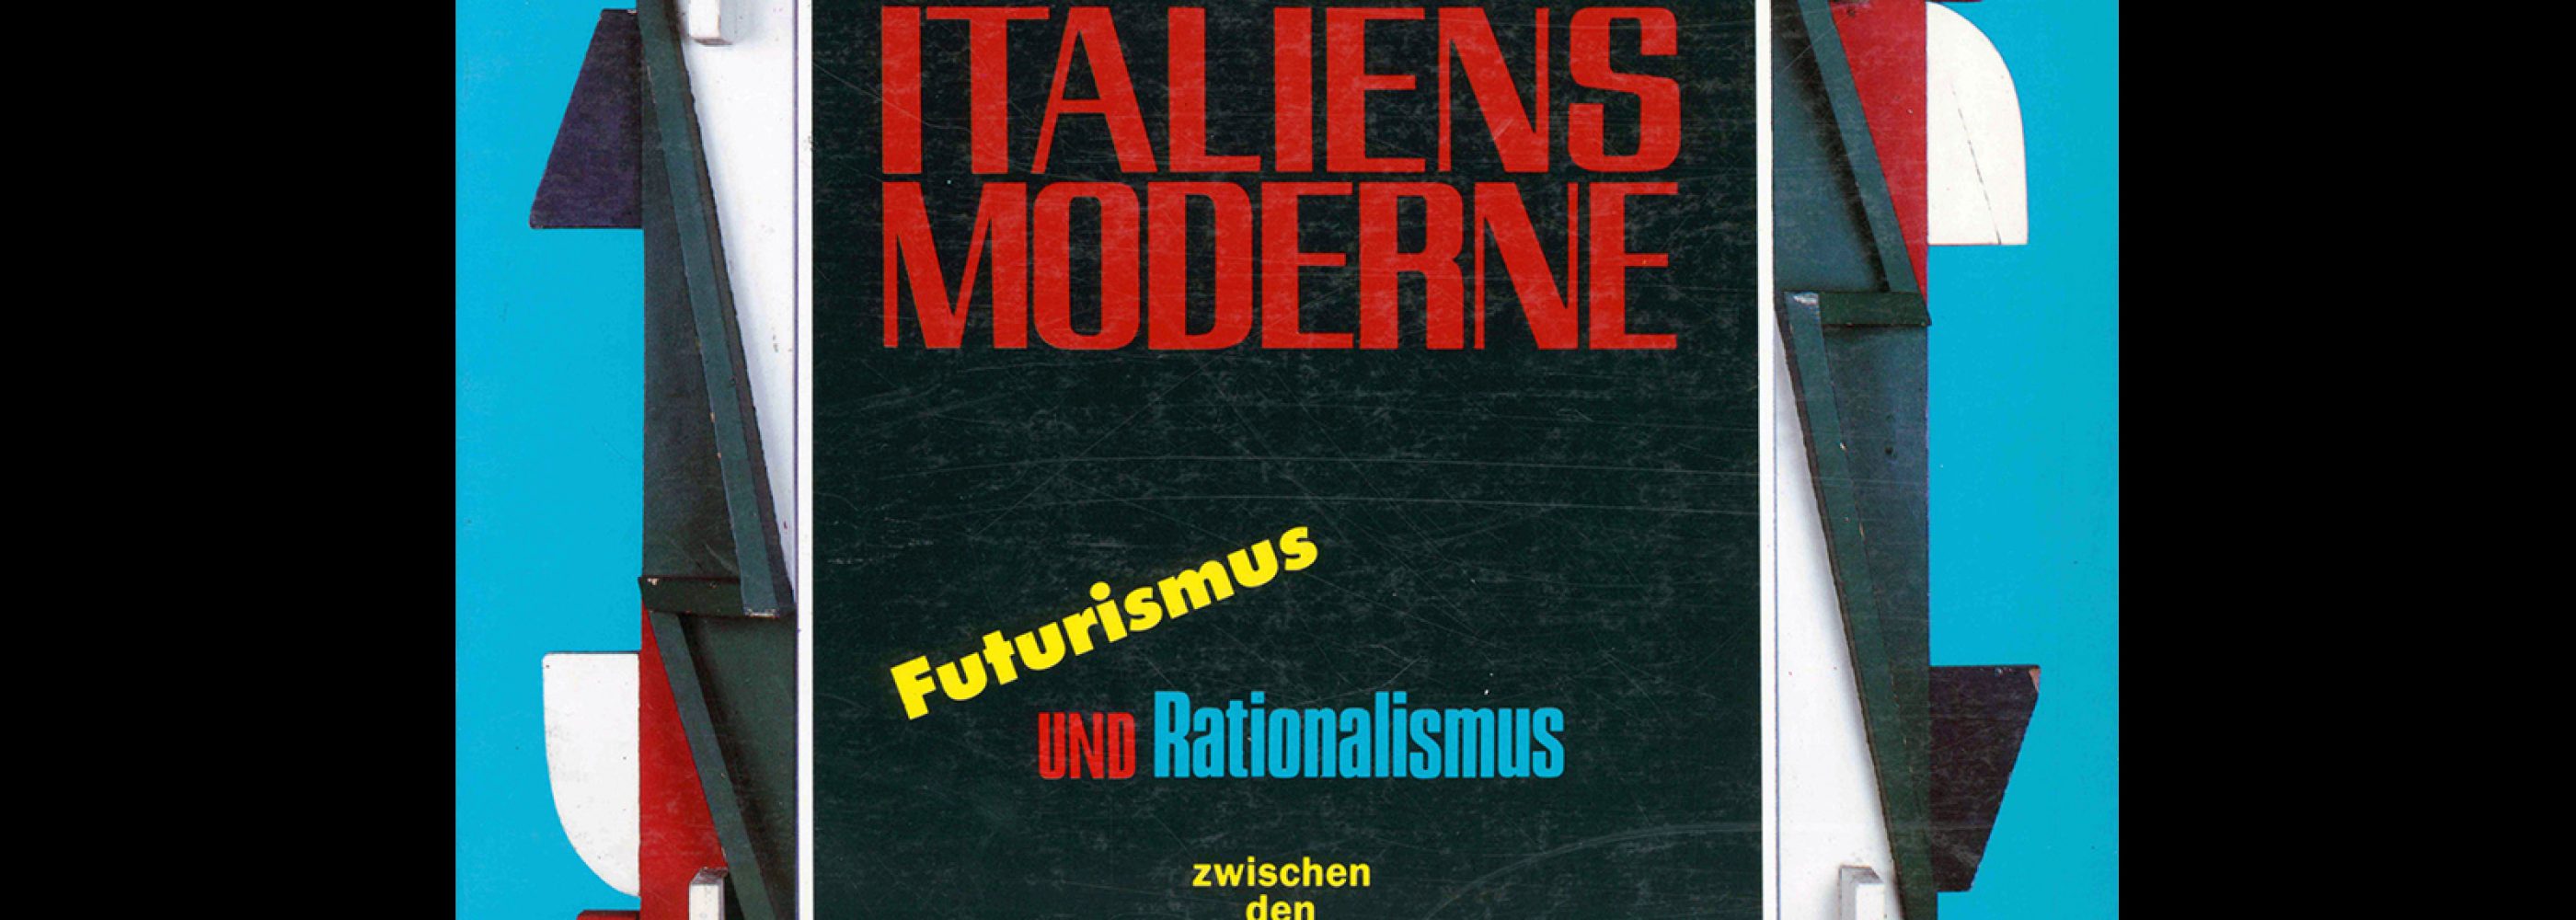 Italiens Moderne, Futurismus und Rationalismus, 1990